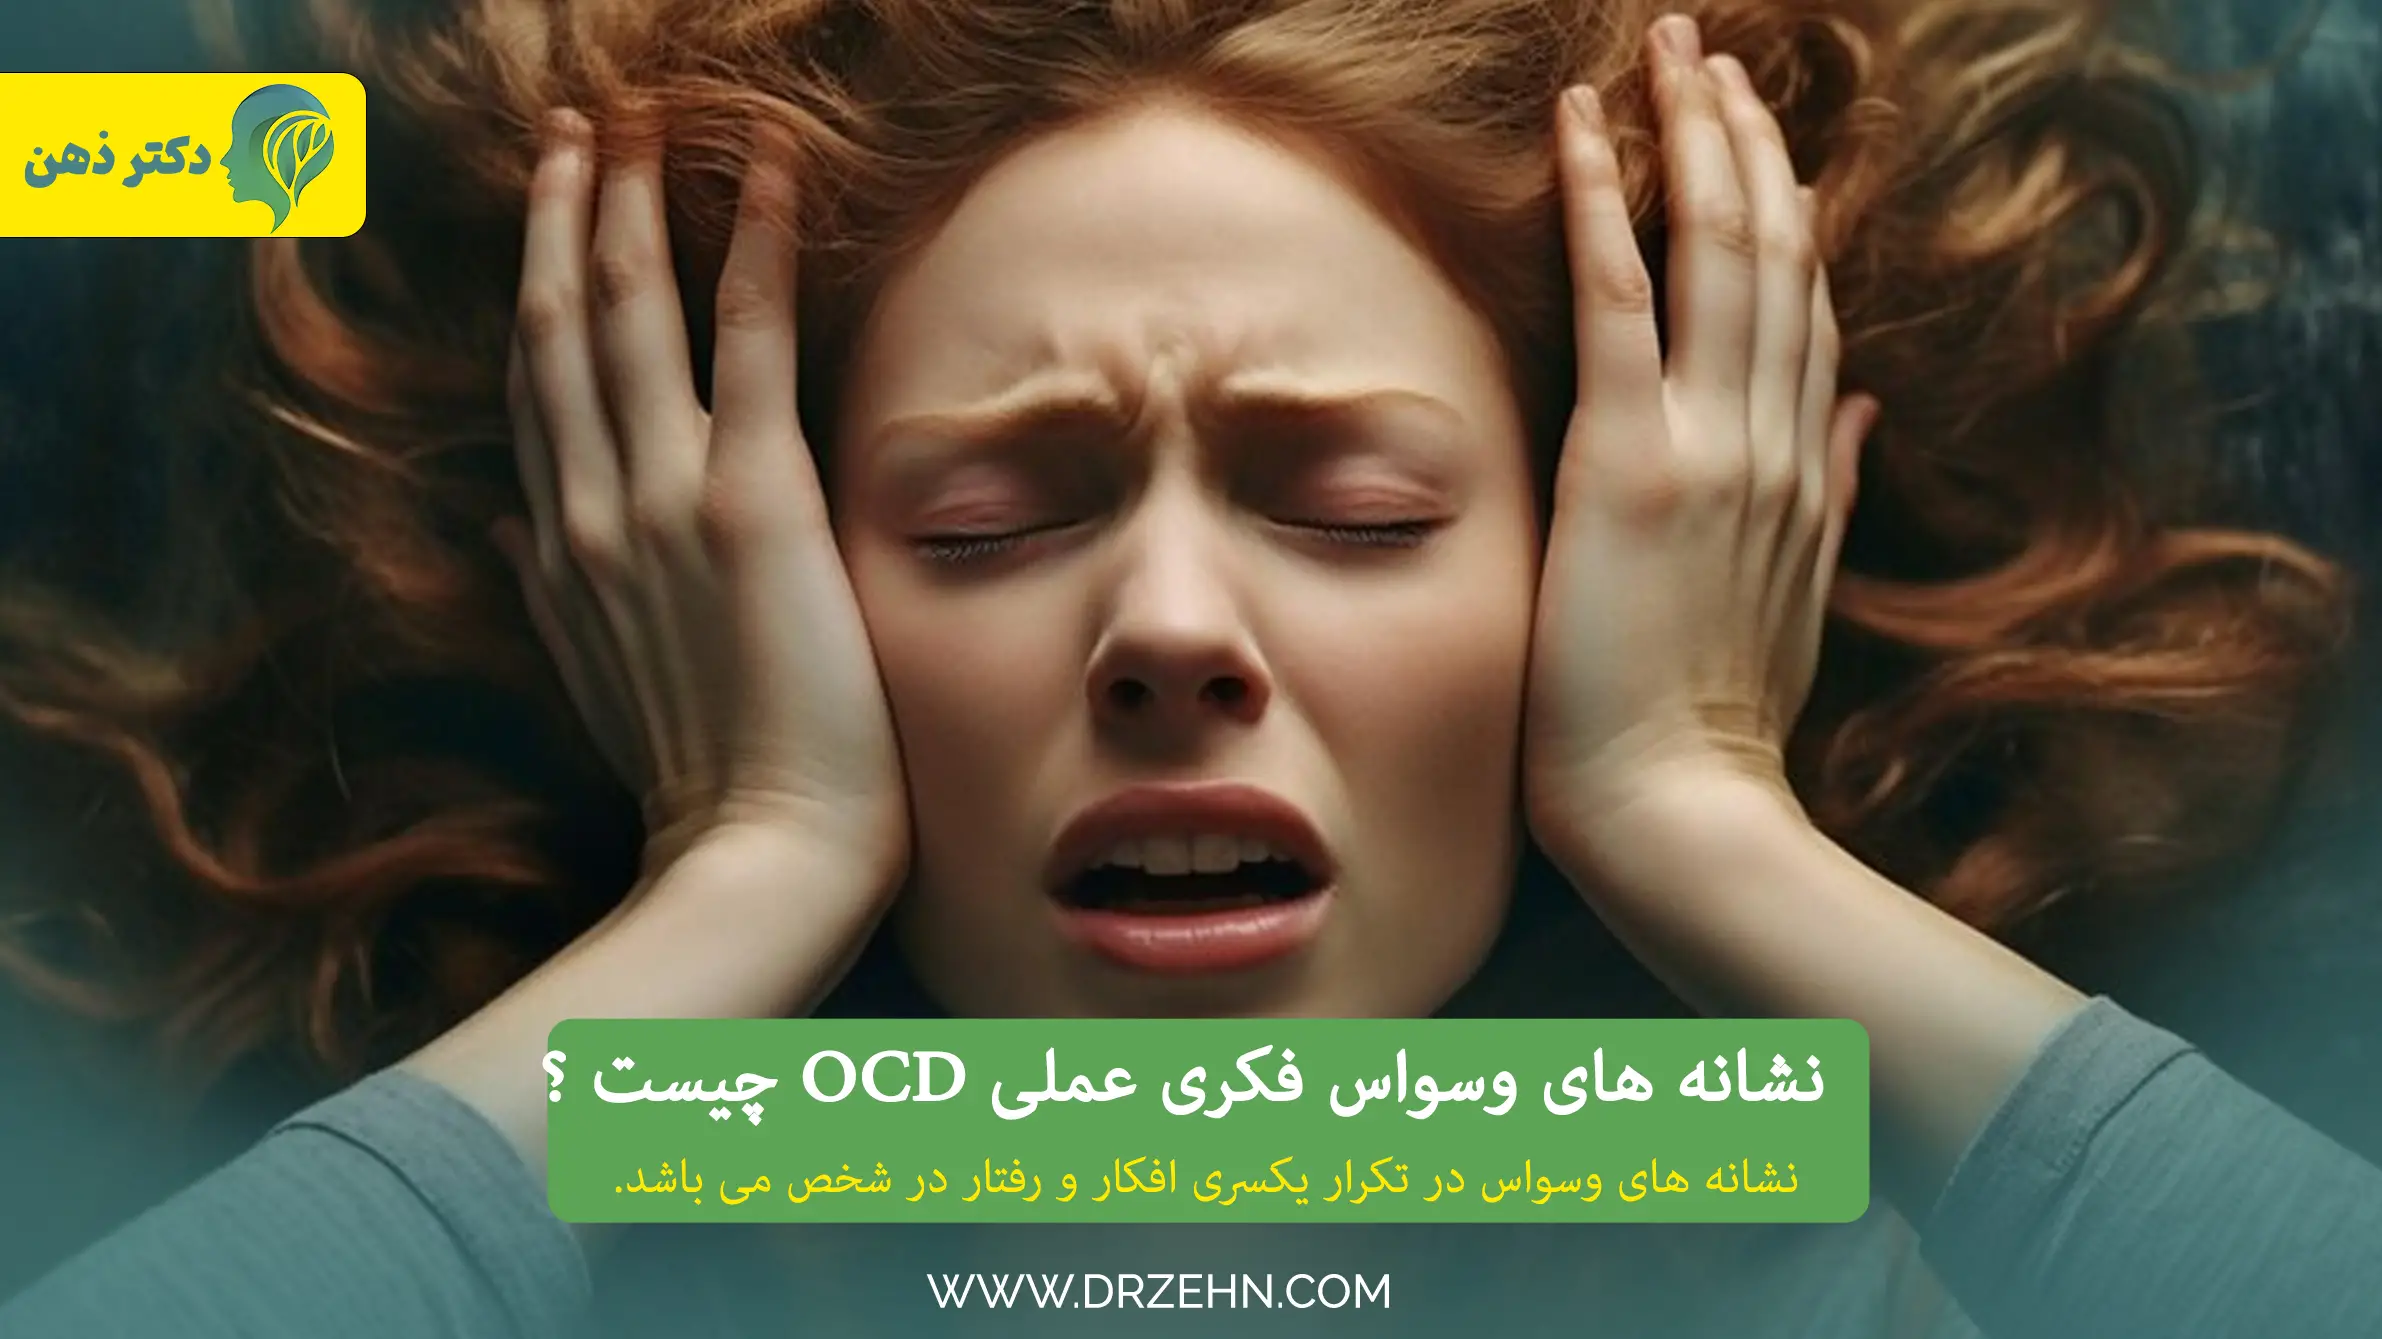 نشانه های OCD